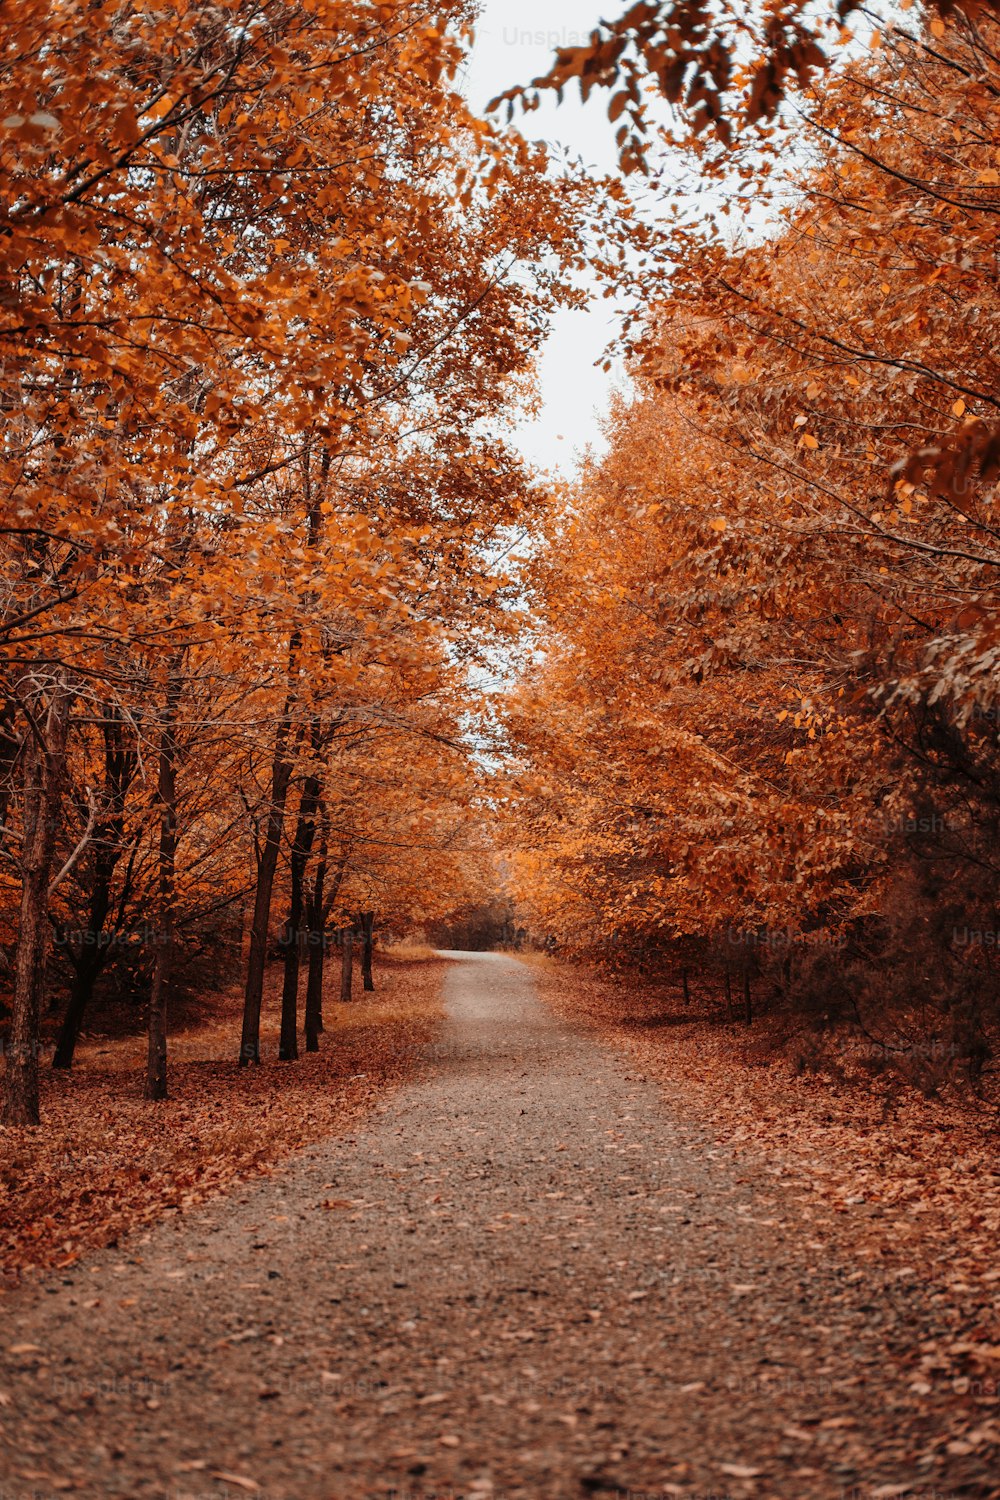 Un camino de tierra rodeado de árboles con hojas de naranja